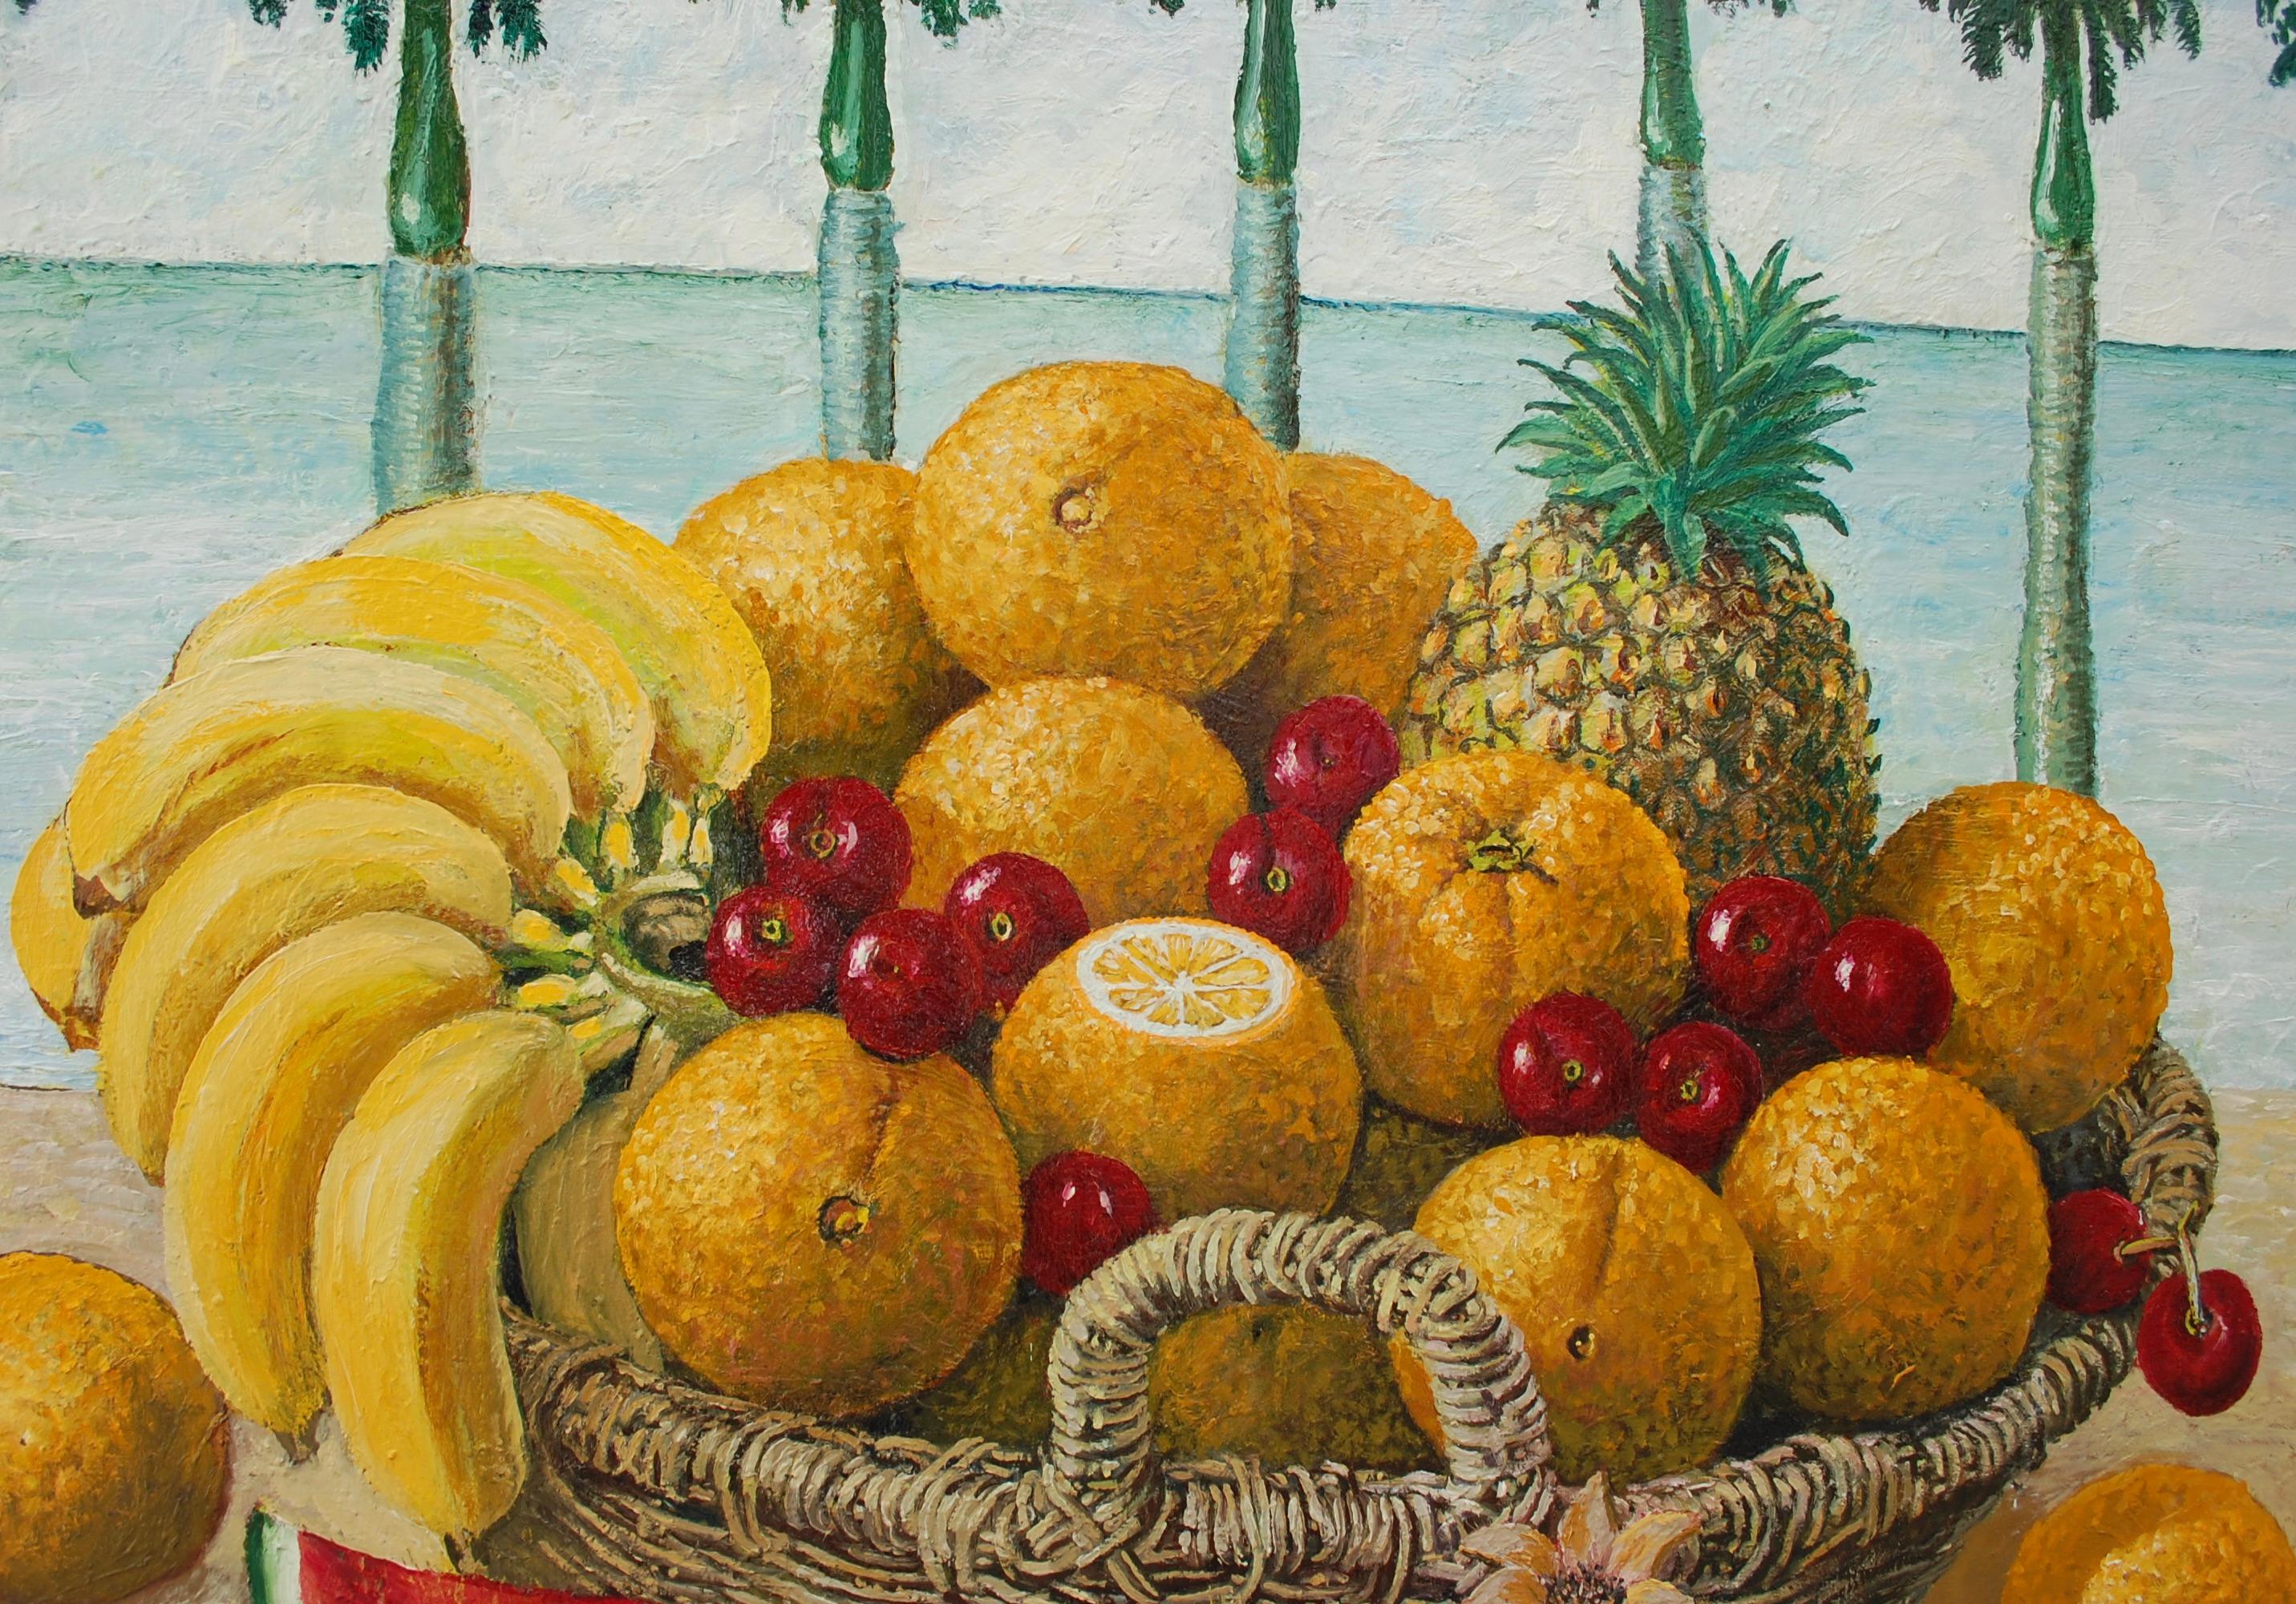 Nature morte avec des fruits tropicaux dans le panier - Contemporain Painting par Rafael Saldarriaga